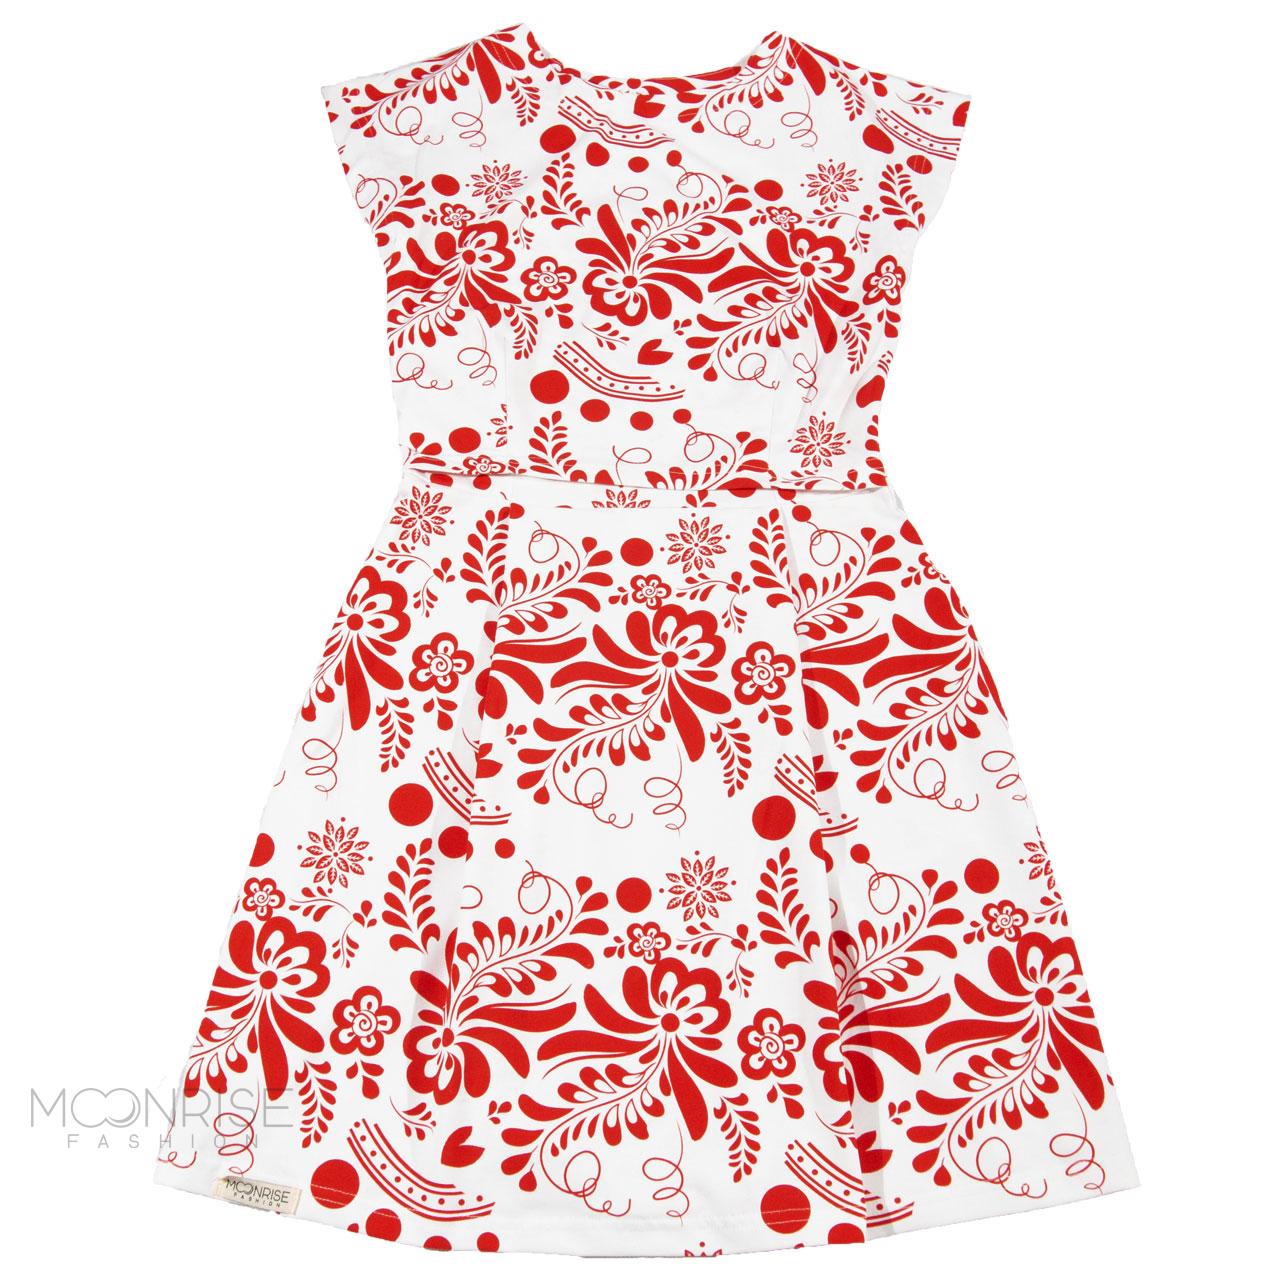 Šaty na dojčenie - folk red flowers